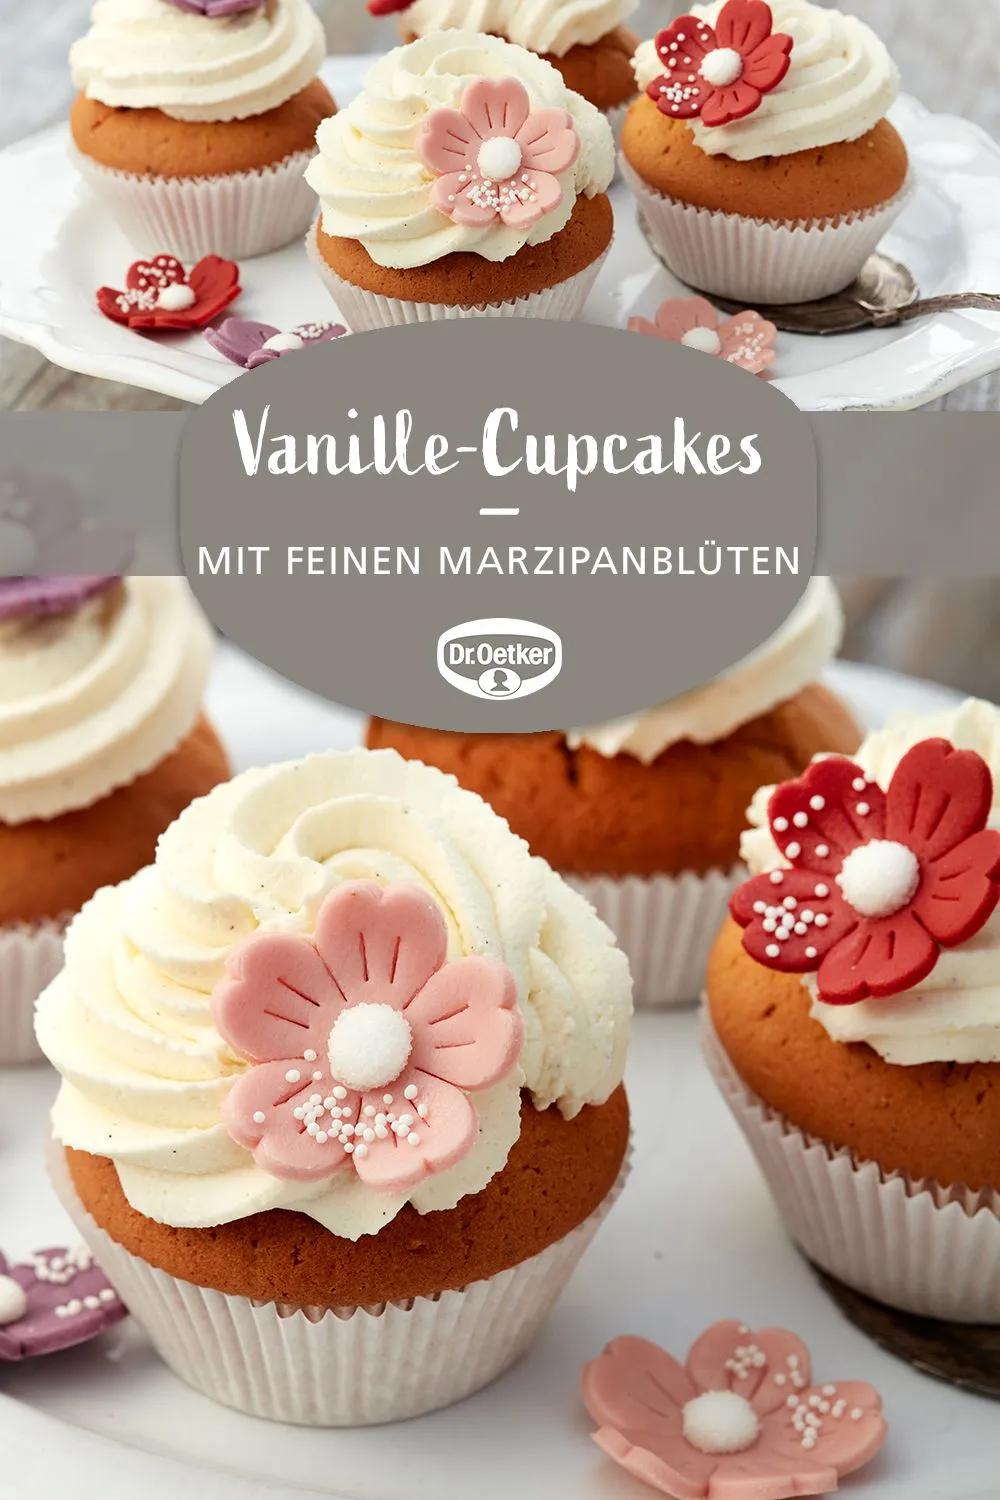 Vanille-Cupcakes | Rezept | Vanille cupcakes, Cupcakes, Kuchen und torten